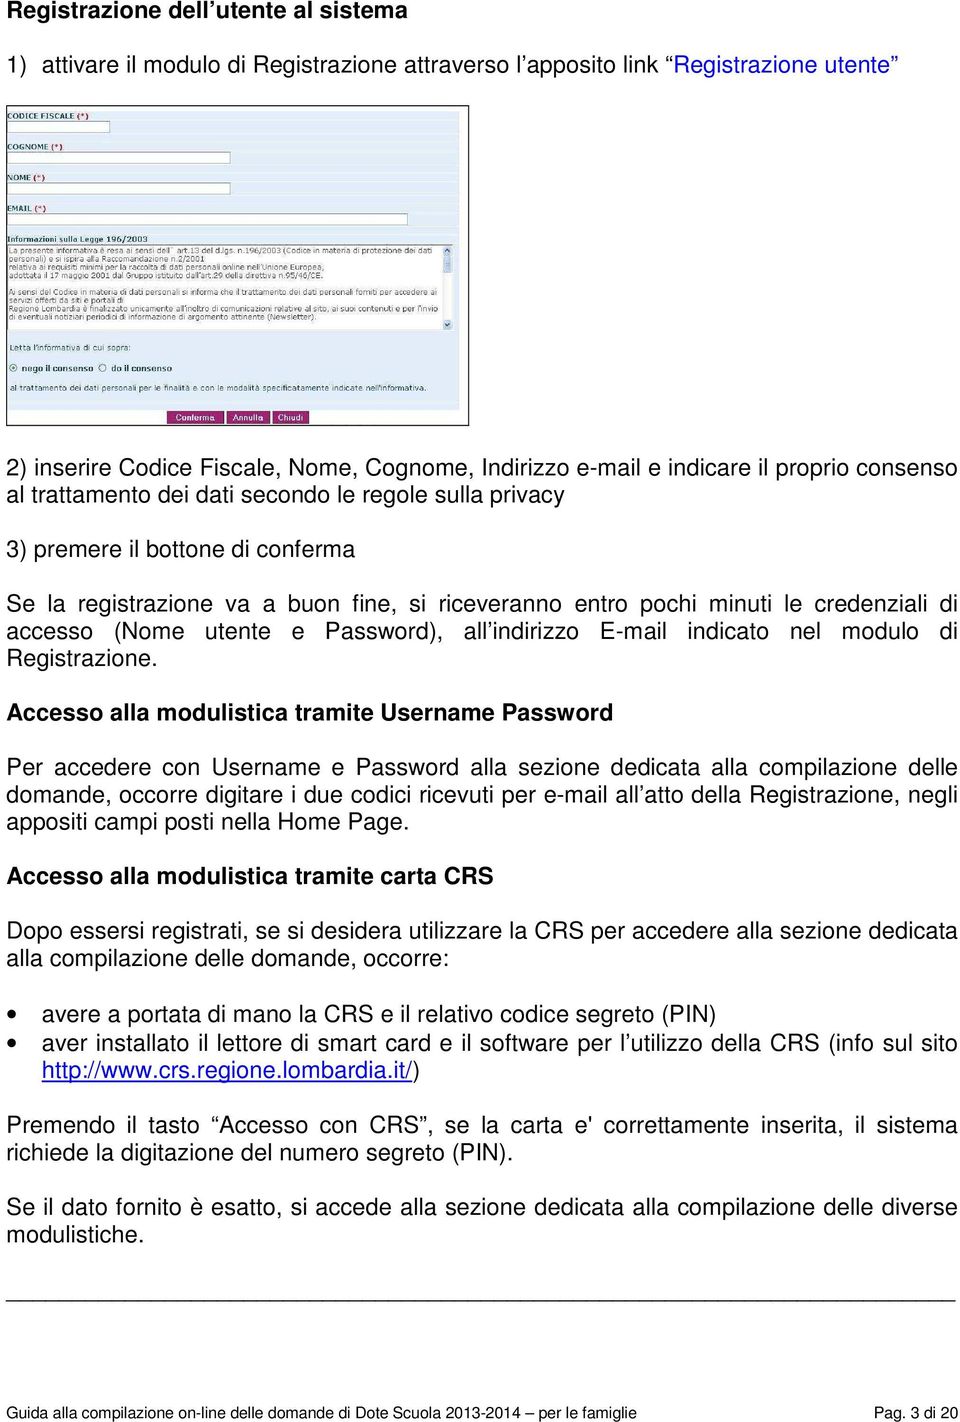 accesso (Nome utente e Password), all indirizzo E-mail indicato nel modulo di Registrazione.